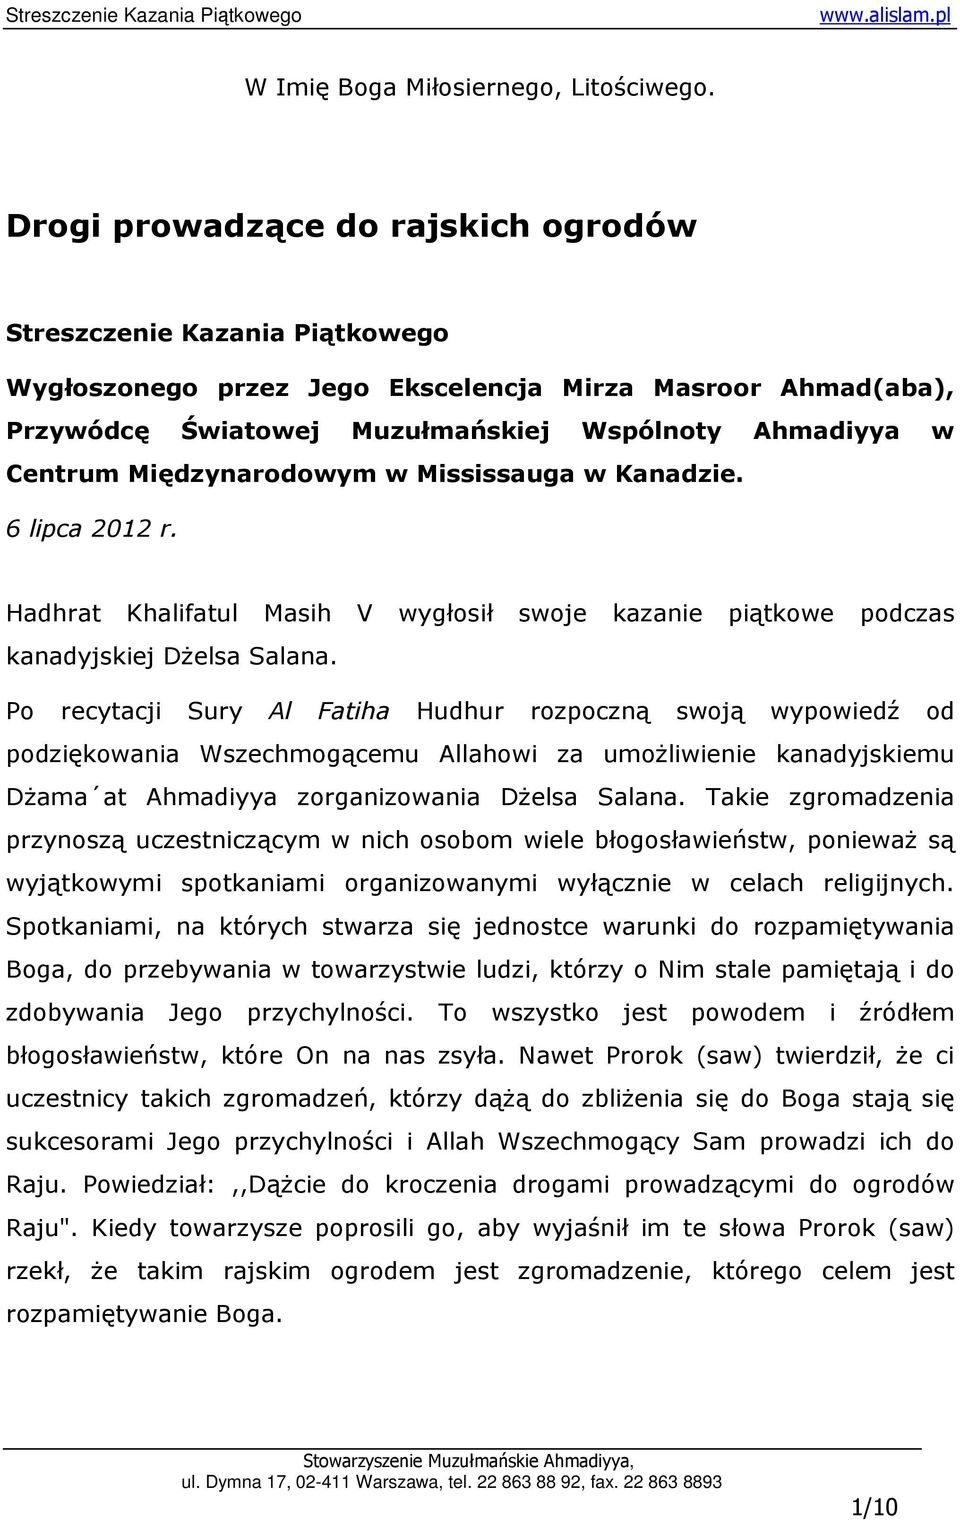 Międzynarodowym w Mississauga w Kanadzie. 6 lipca 2012 r. Hadhrat Khalifatul Masih V wygłosił swoje kazanie piątkowe podczas kanadyjskiej DŜelsa Salana.